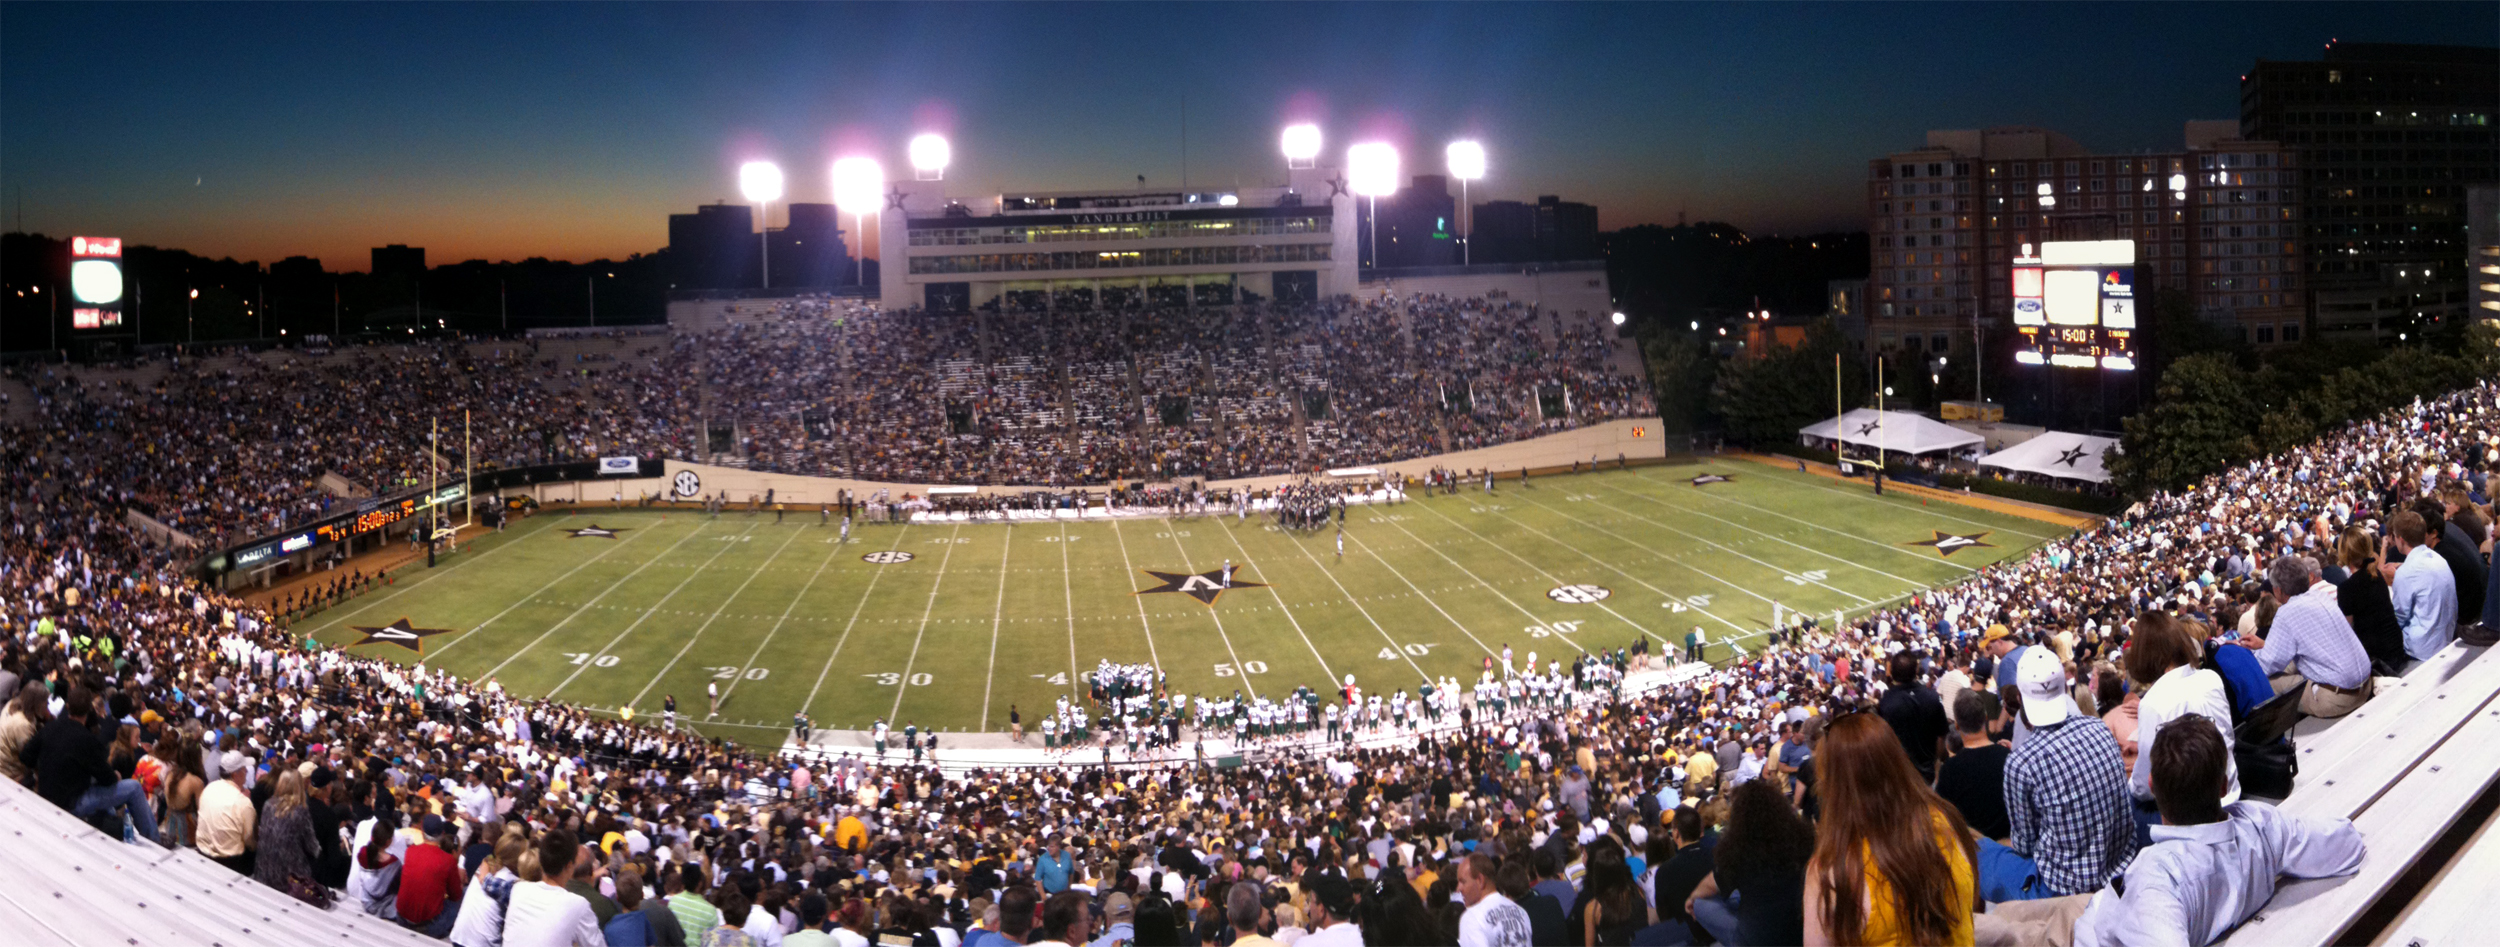 Vanderbilt_Stadium_panorama.jpg